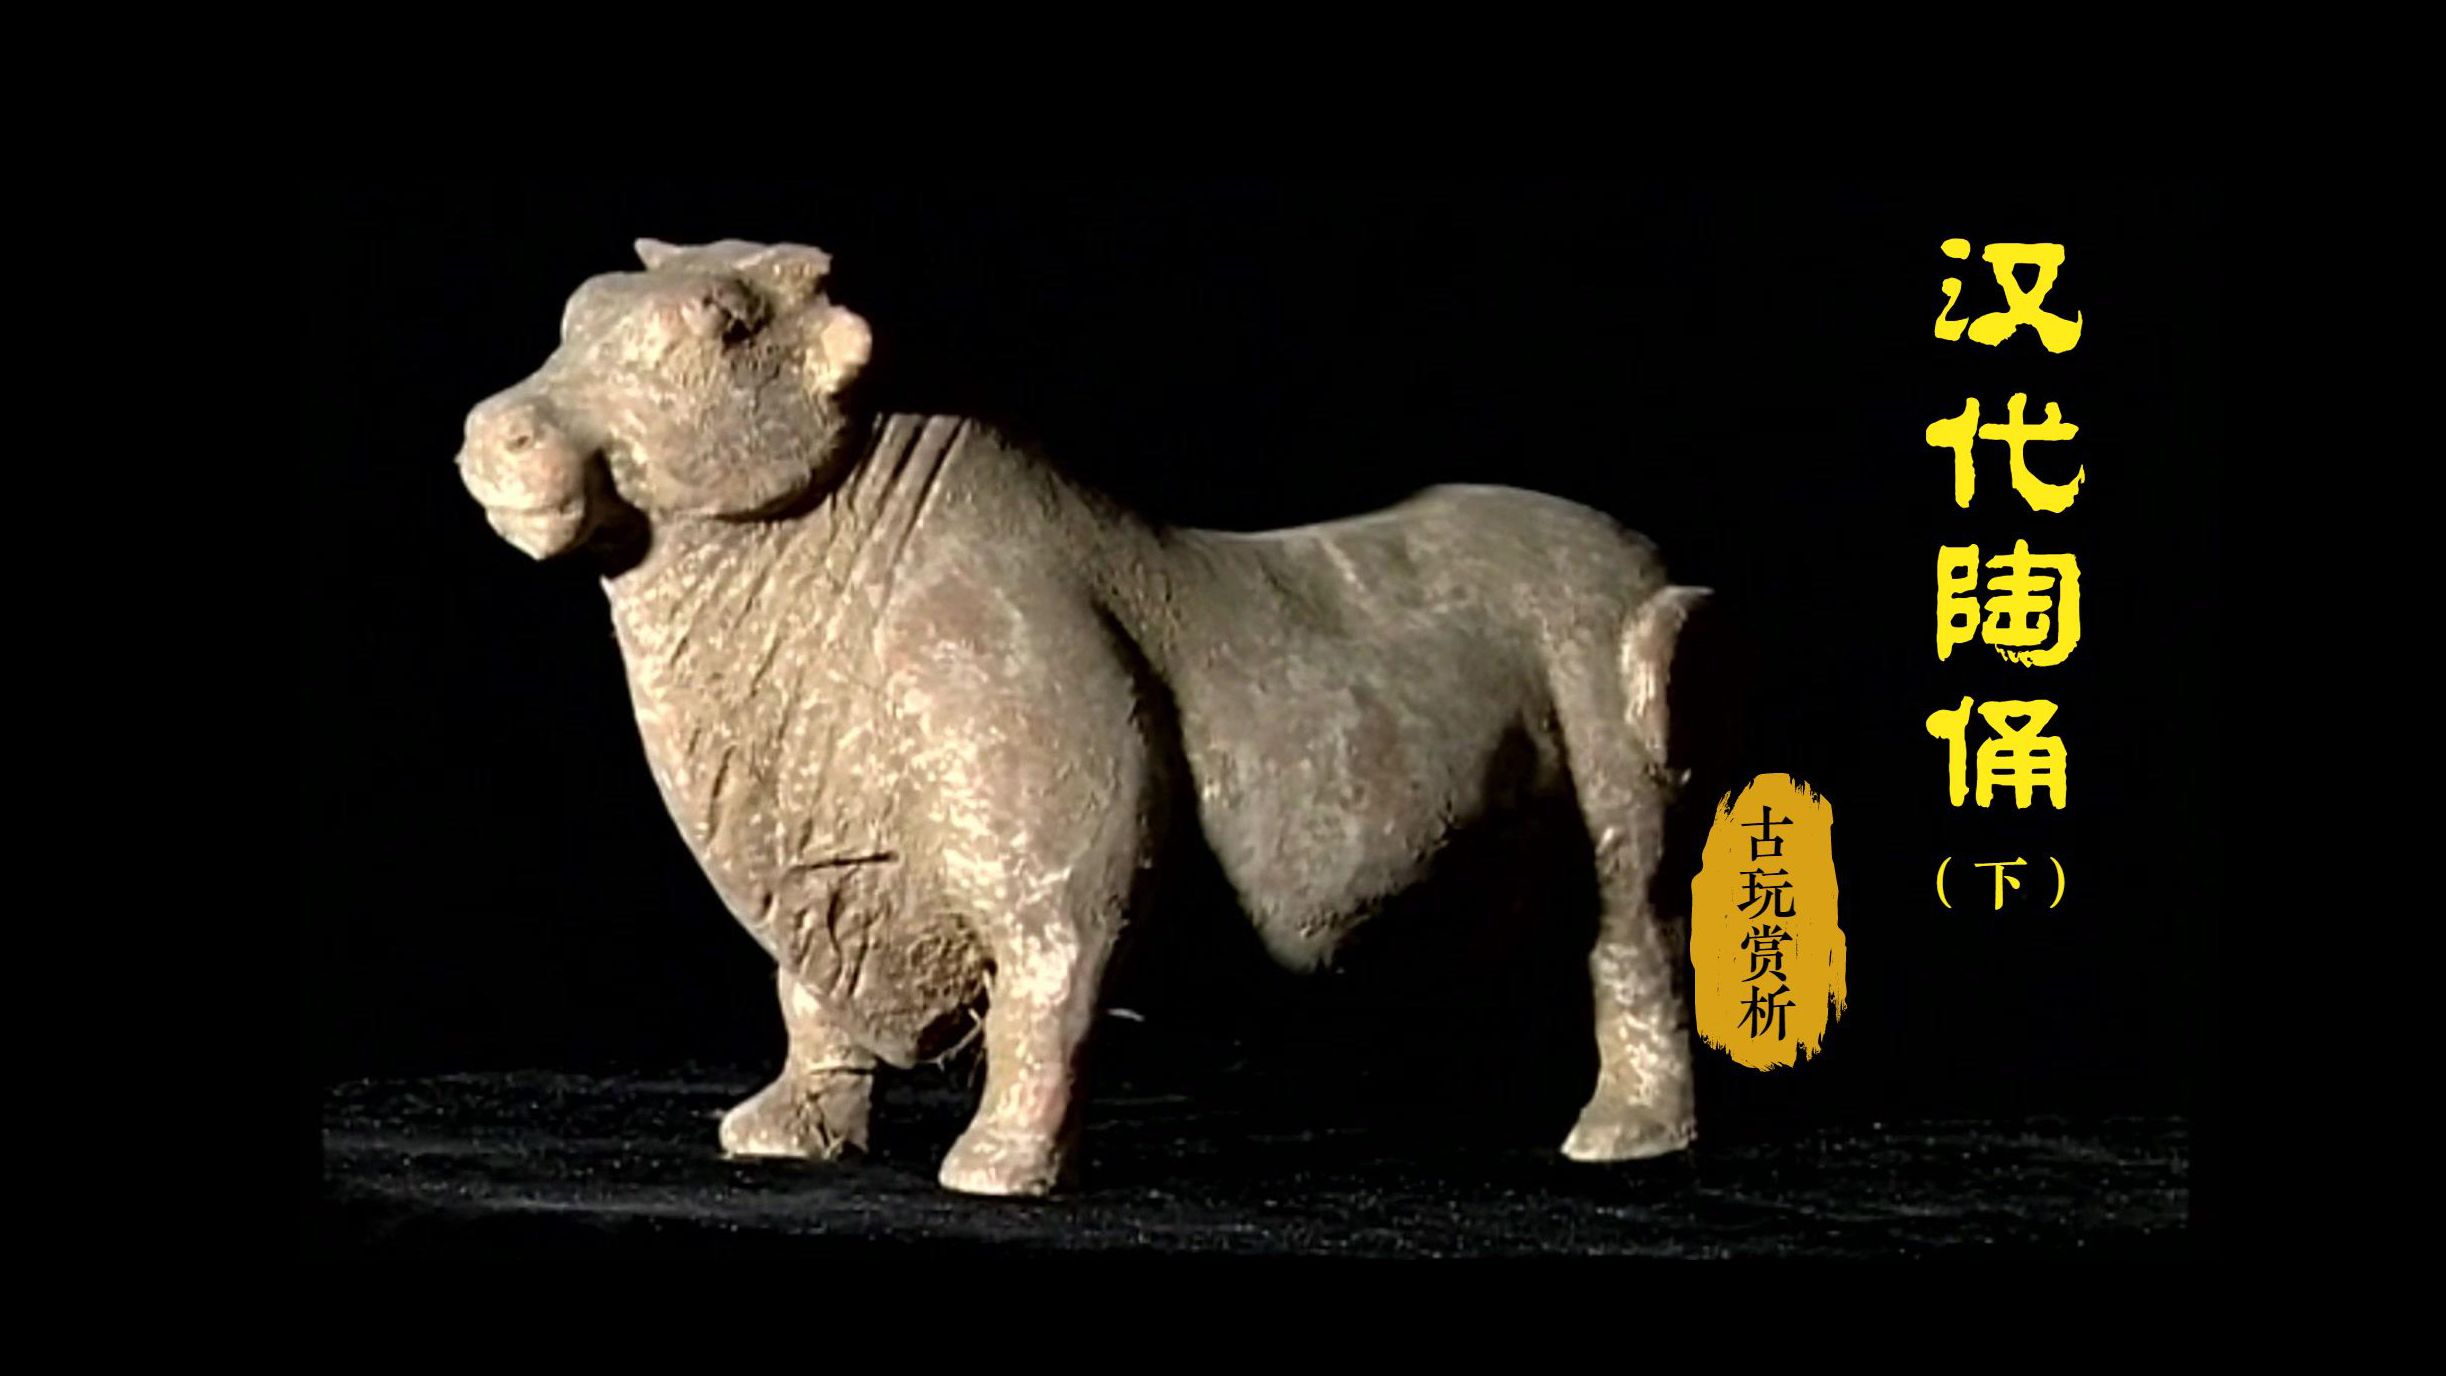 【古玩赏析】汉代陶俑(下):了解古人的生活和丧葬习俗